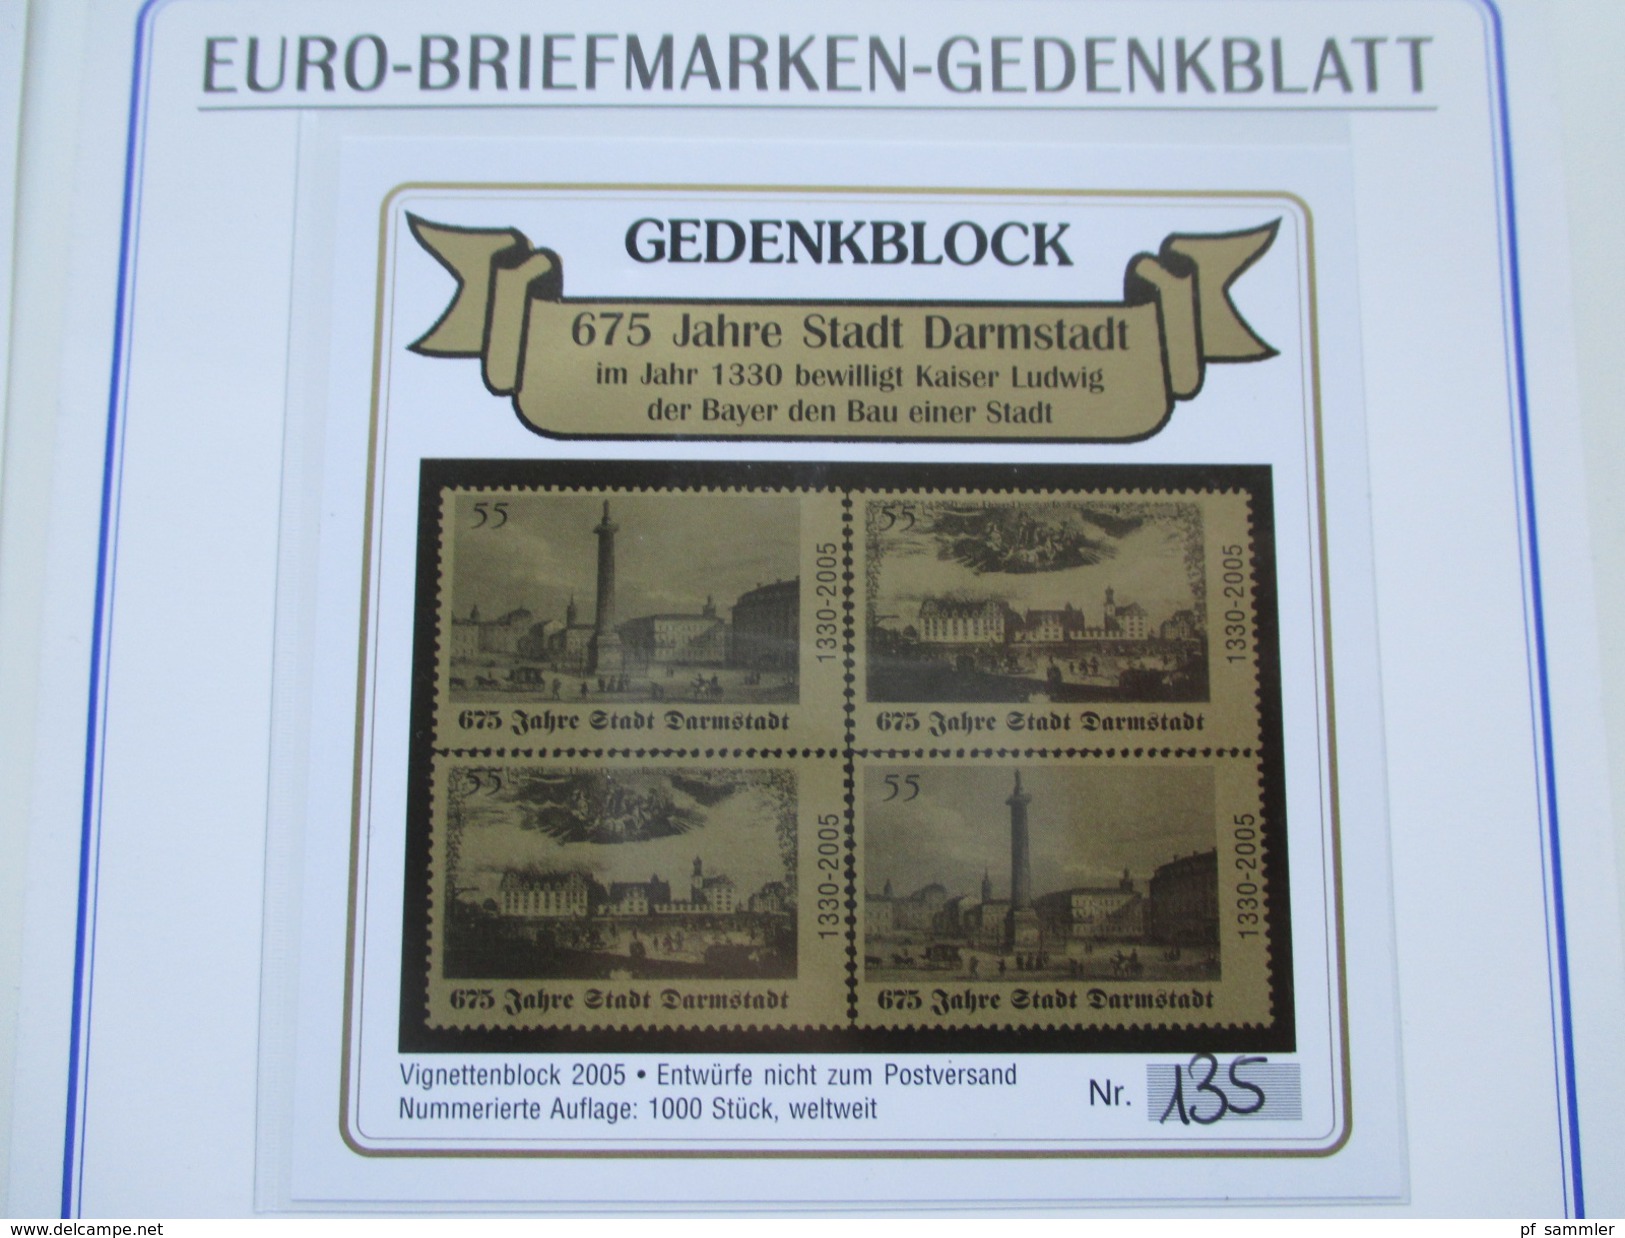 BRD 2004/05 Euro Briefmarken Gedenkblatt 2 Stück Auflage 1000 Stück. Gedenkblock 675 Jahre Darmstadt - Covers & Documents